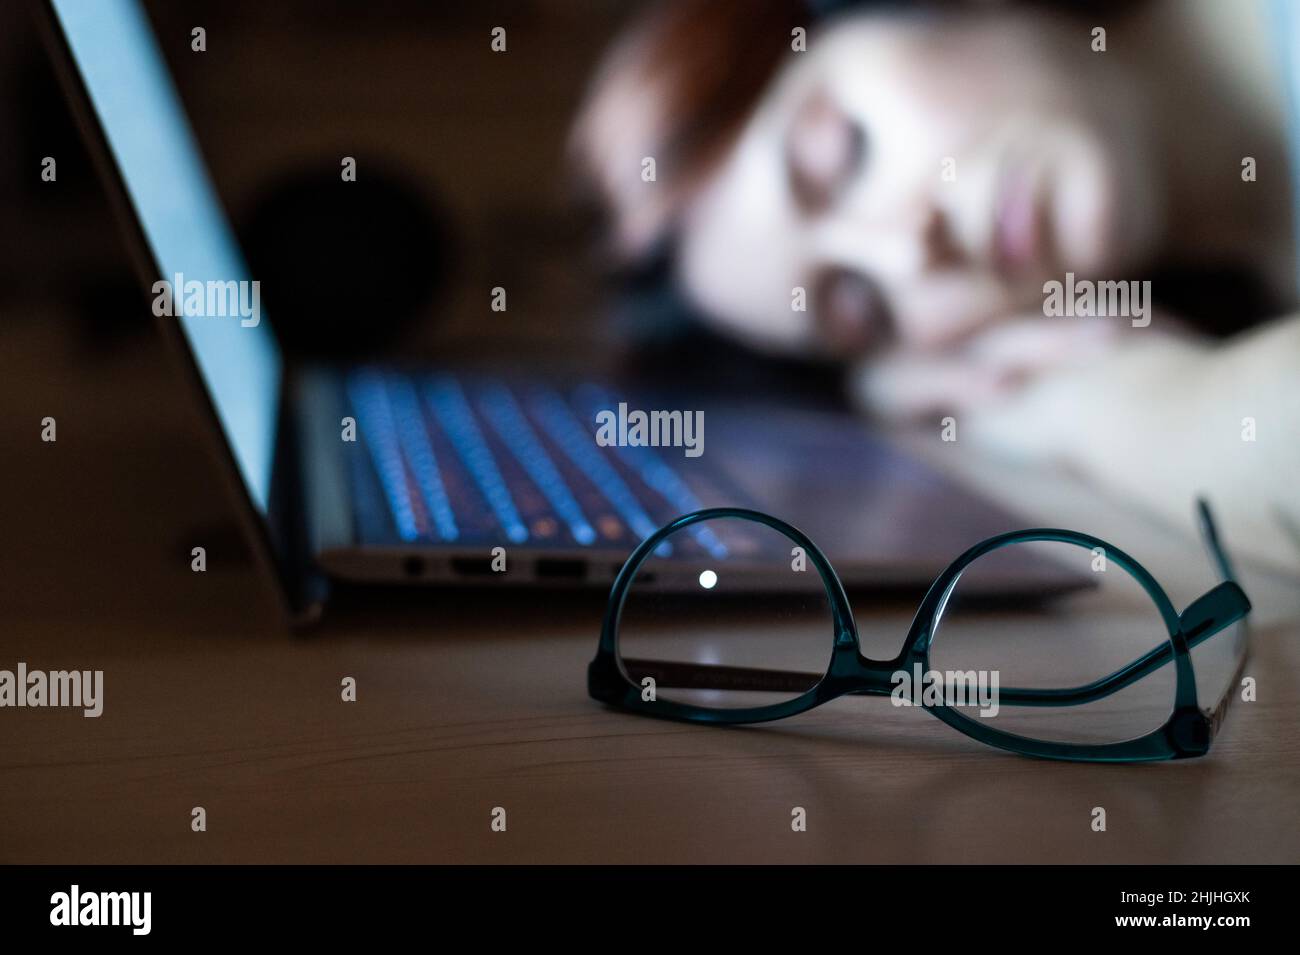 Donna stanca che dorme sul posto di lavoro vicino al laptop. Ragazza si è staccata per lavoro remoto. Lo studente sovraccarico si addormentò sul tavolo. Occhiali in primo piano. Foto Stock